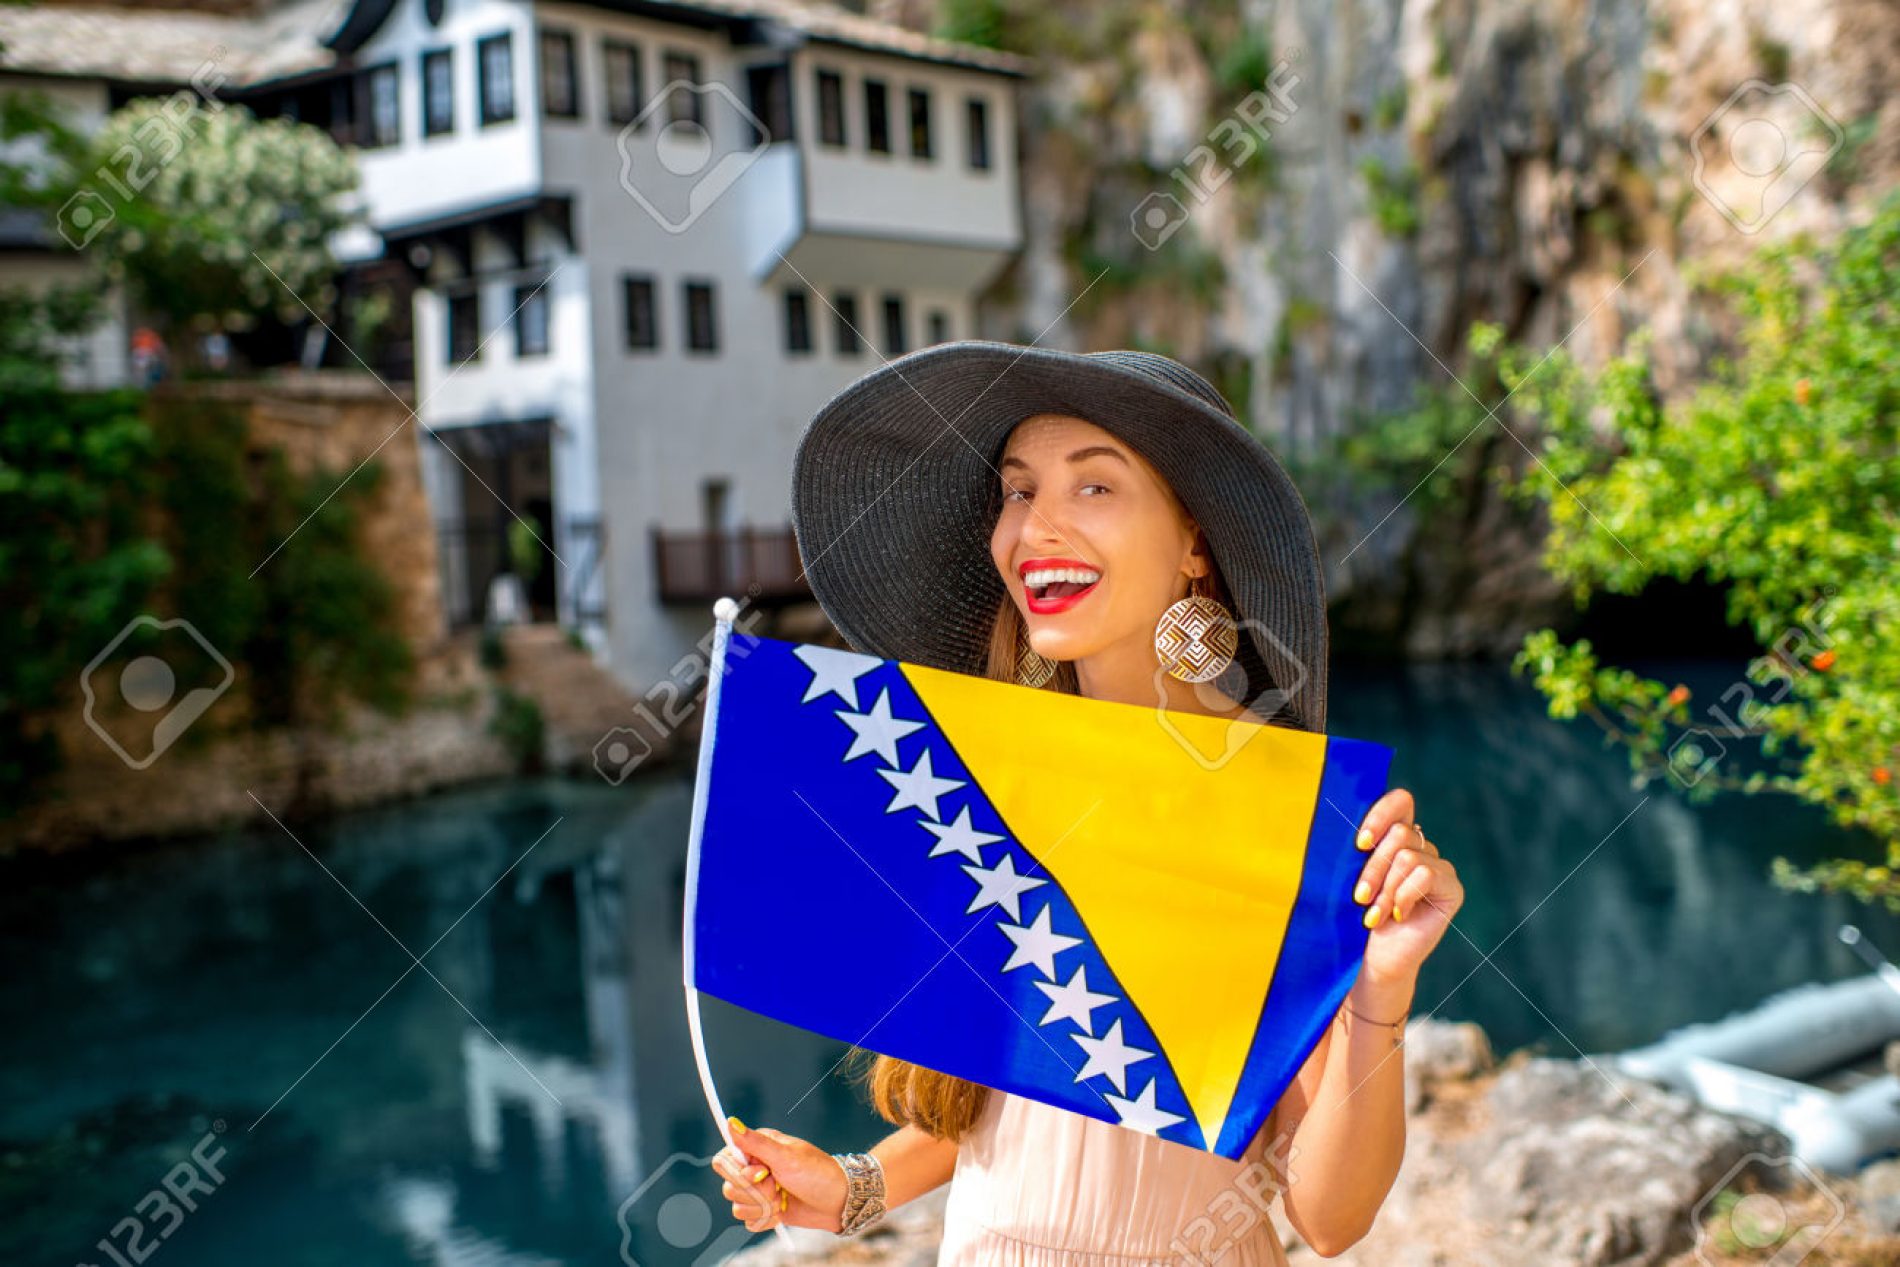 Bosna i Hercegovina bilježi konstantan rast turističkih posjeta, u martu 7,5% više turista u odnosu na mart ’16.